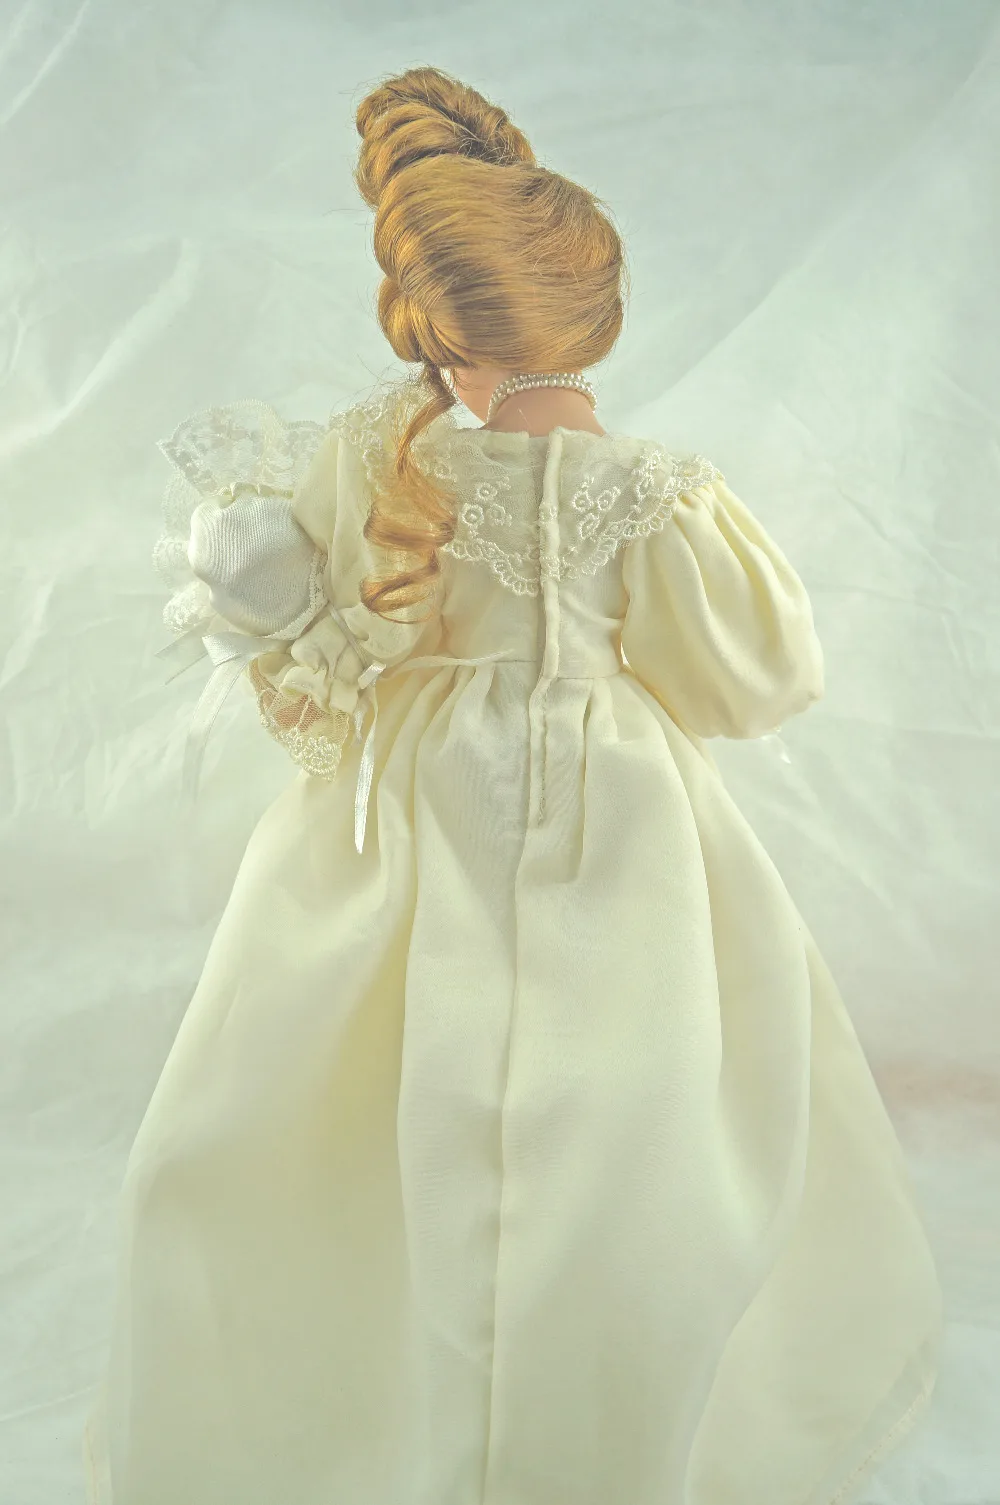 Козетта сбор женщин детское бежевое платье реалистичные косы принцессы Ангел фарфоровая кукла